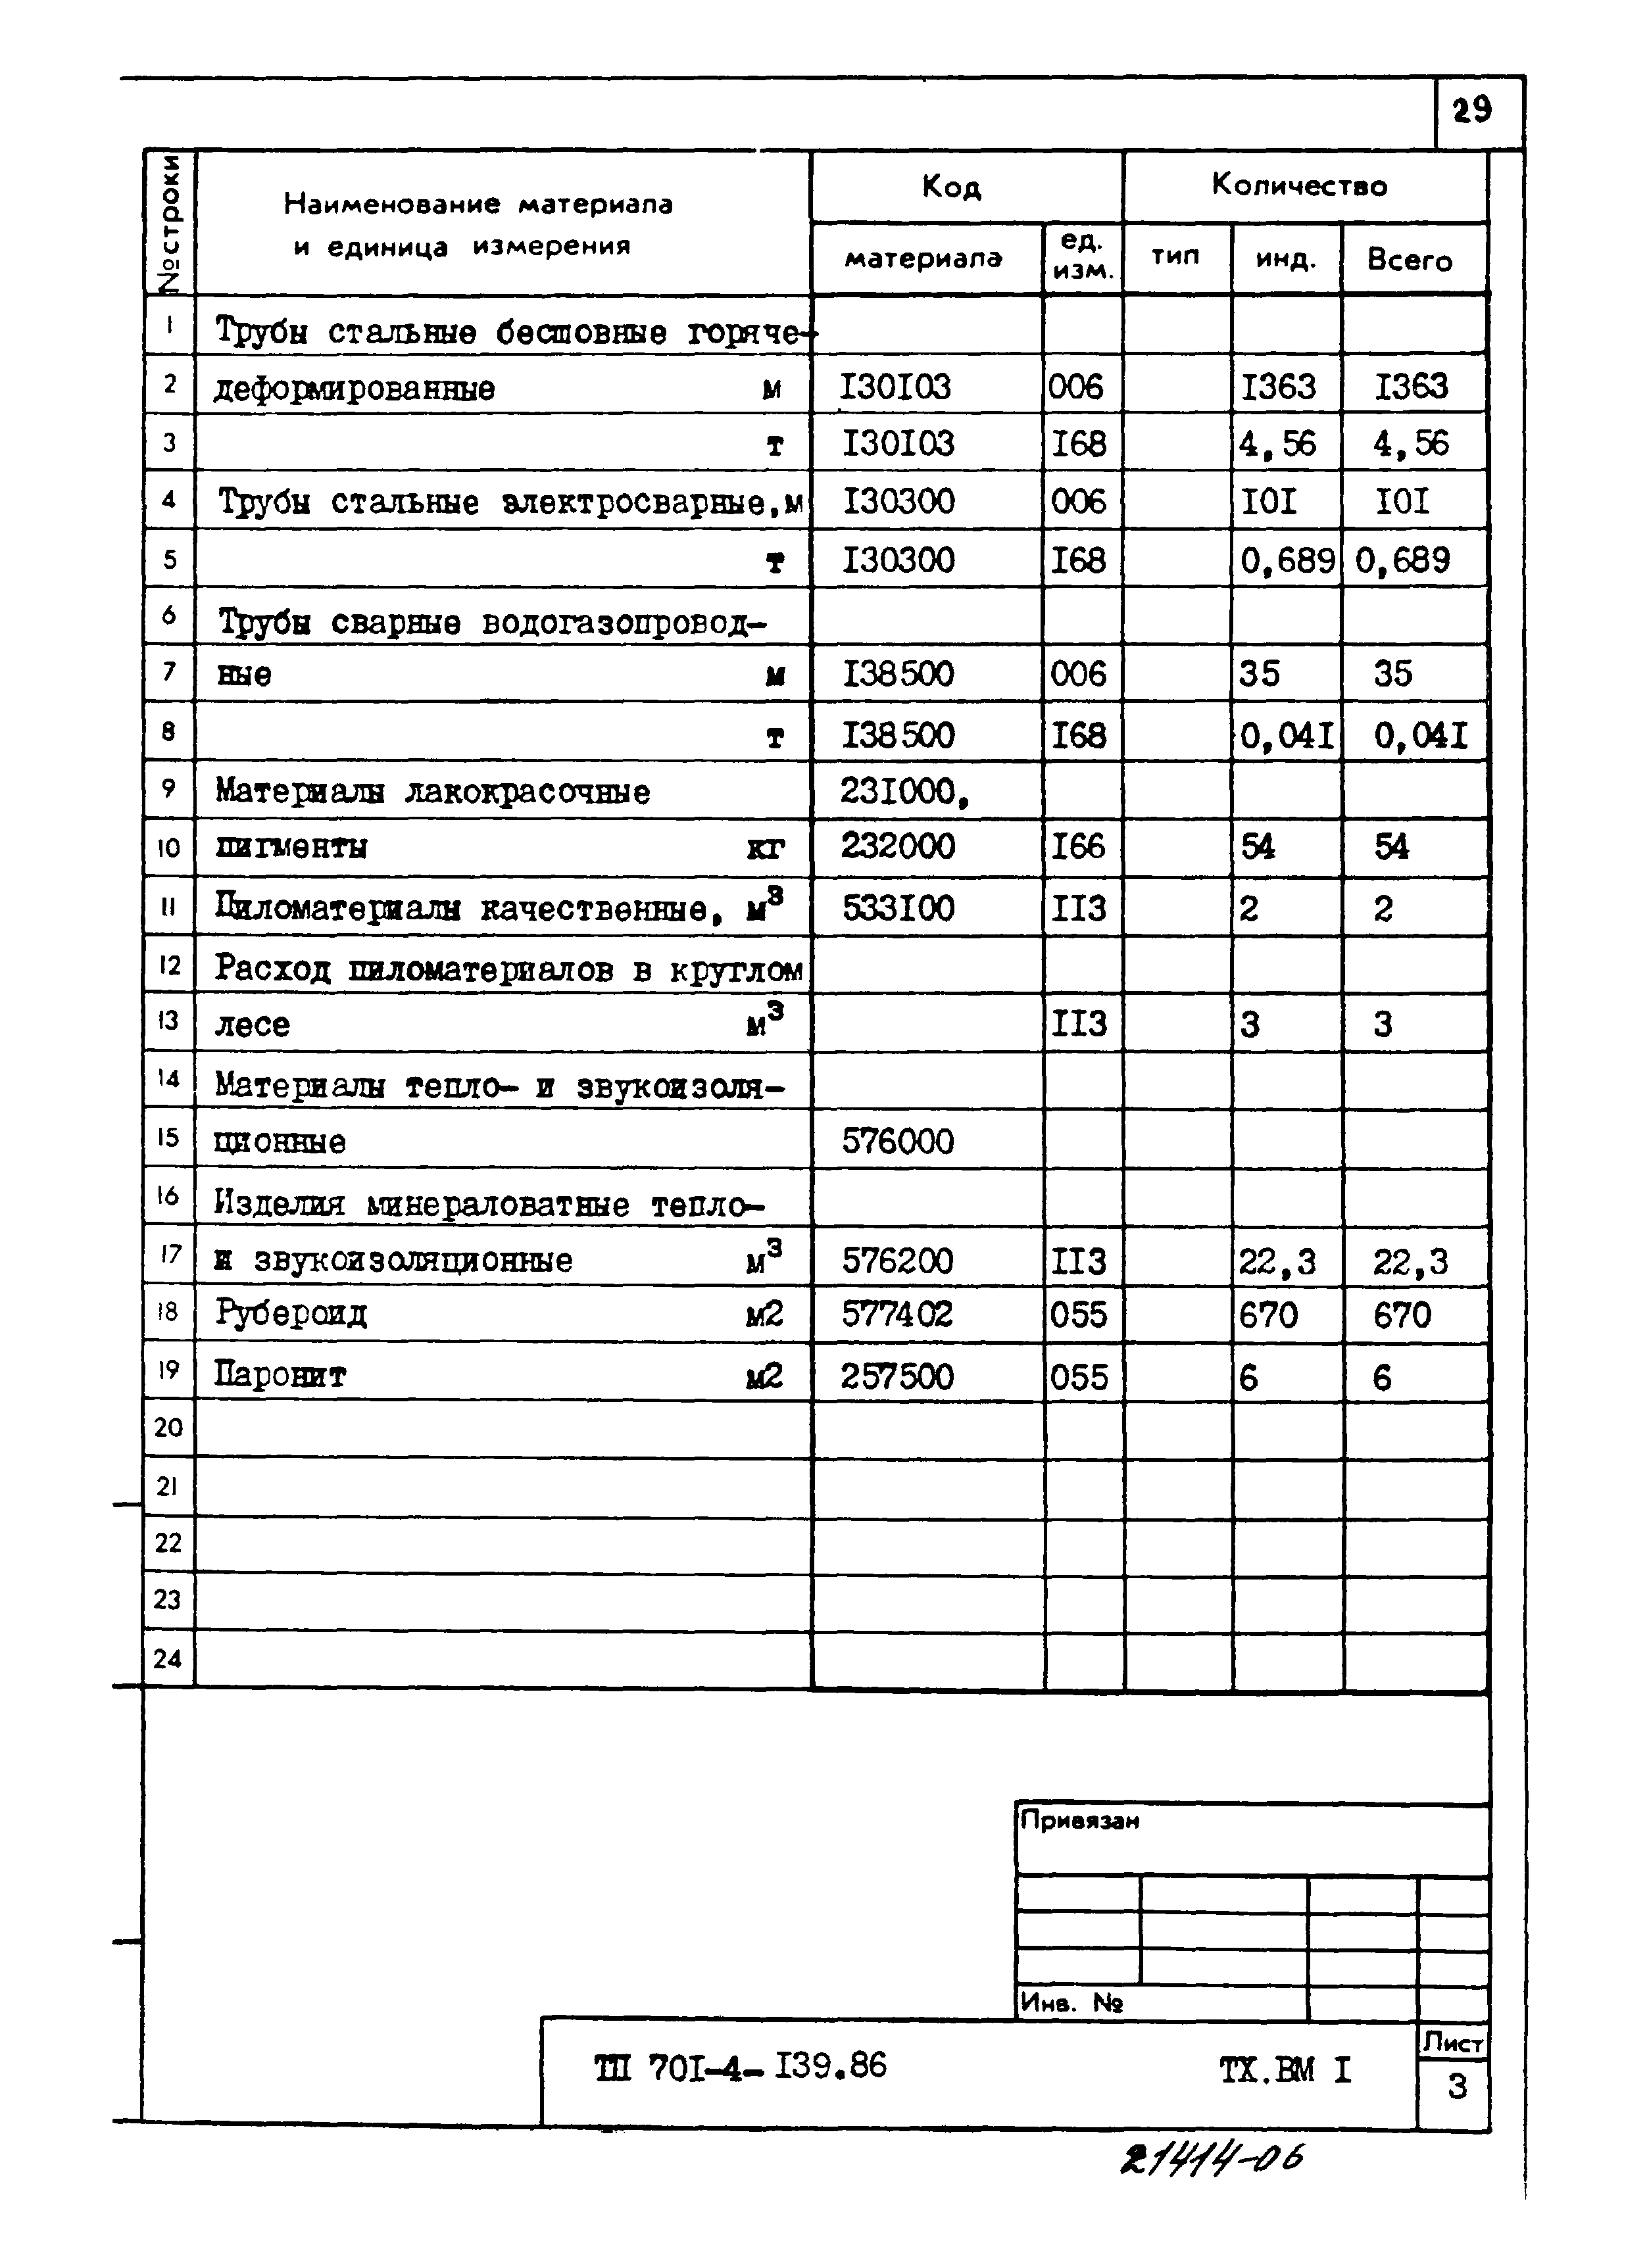 Типовой проект 701-4-139.86